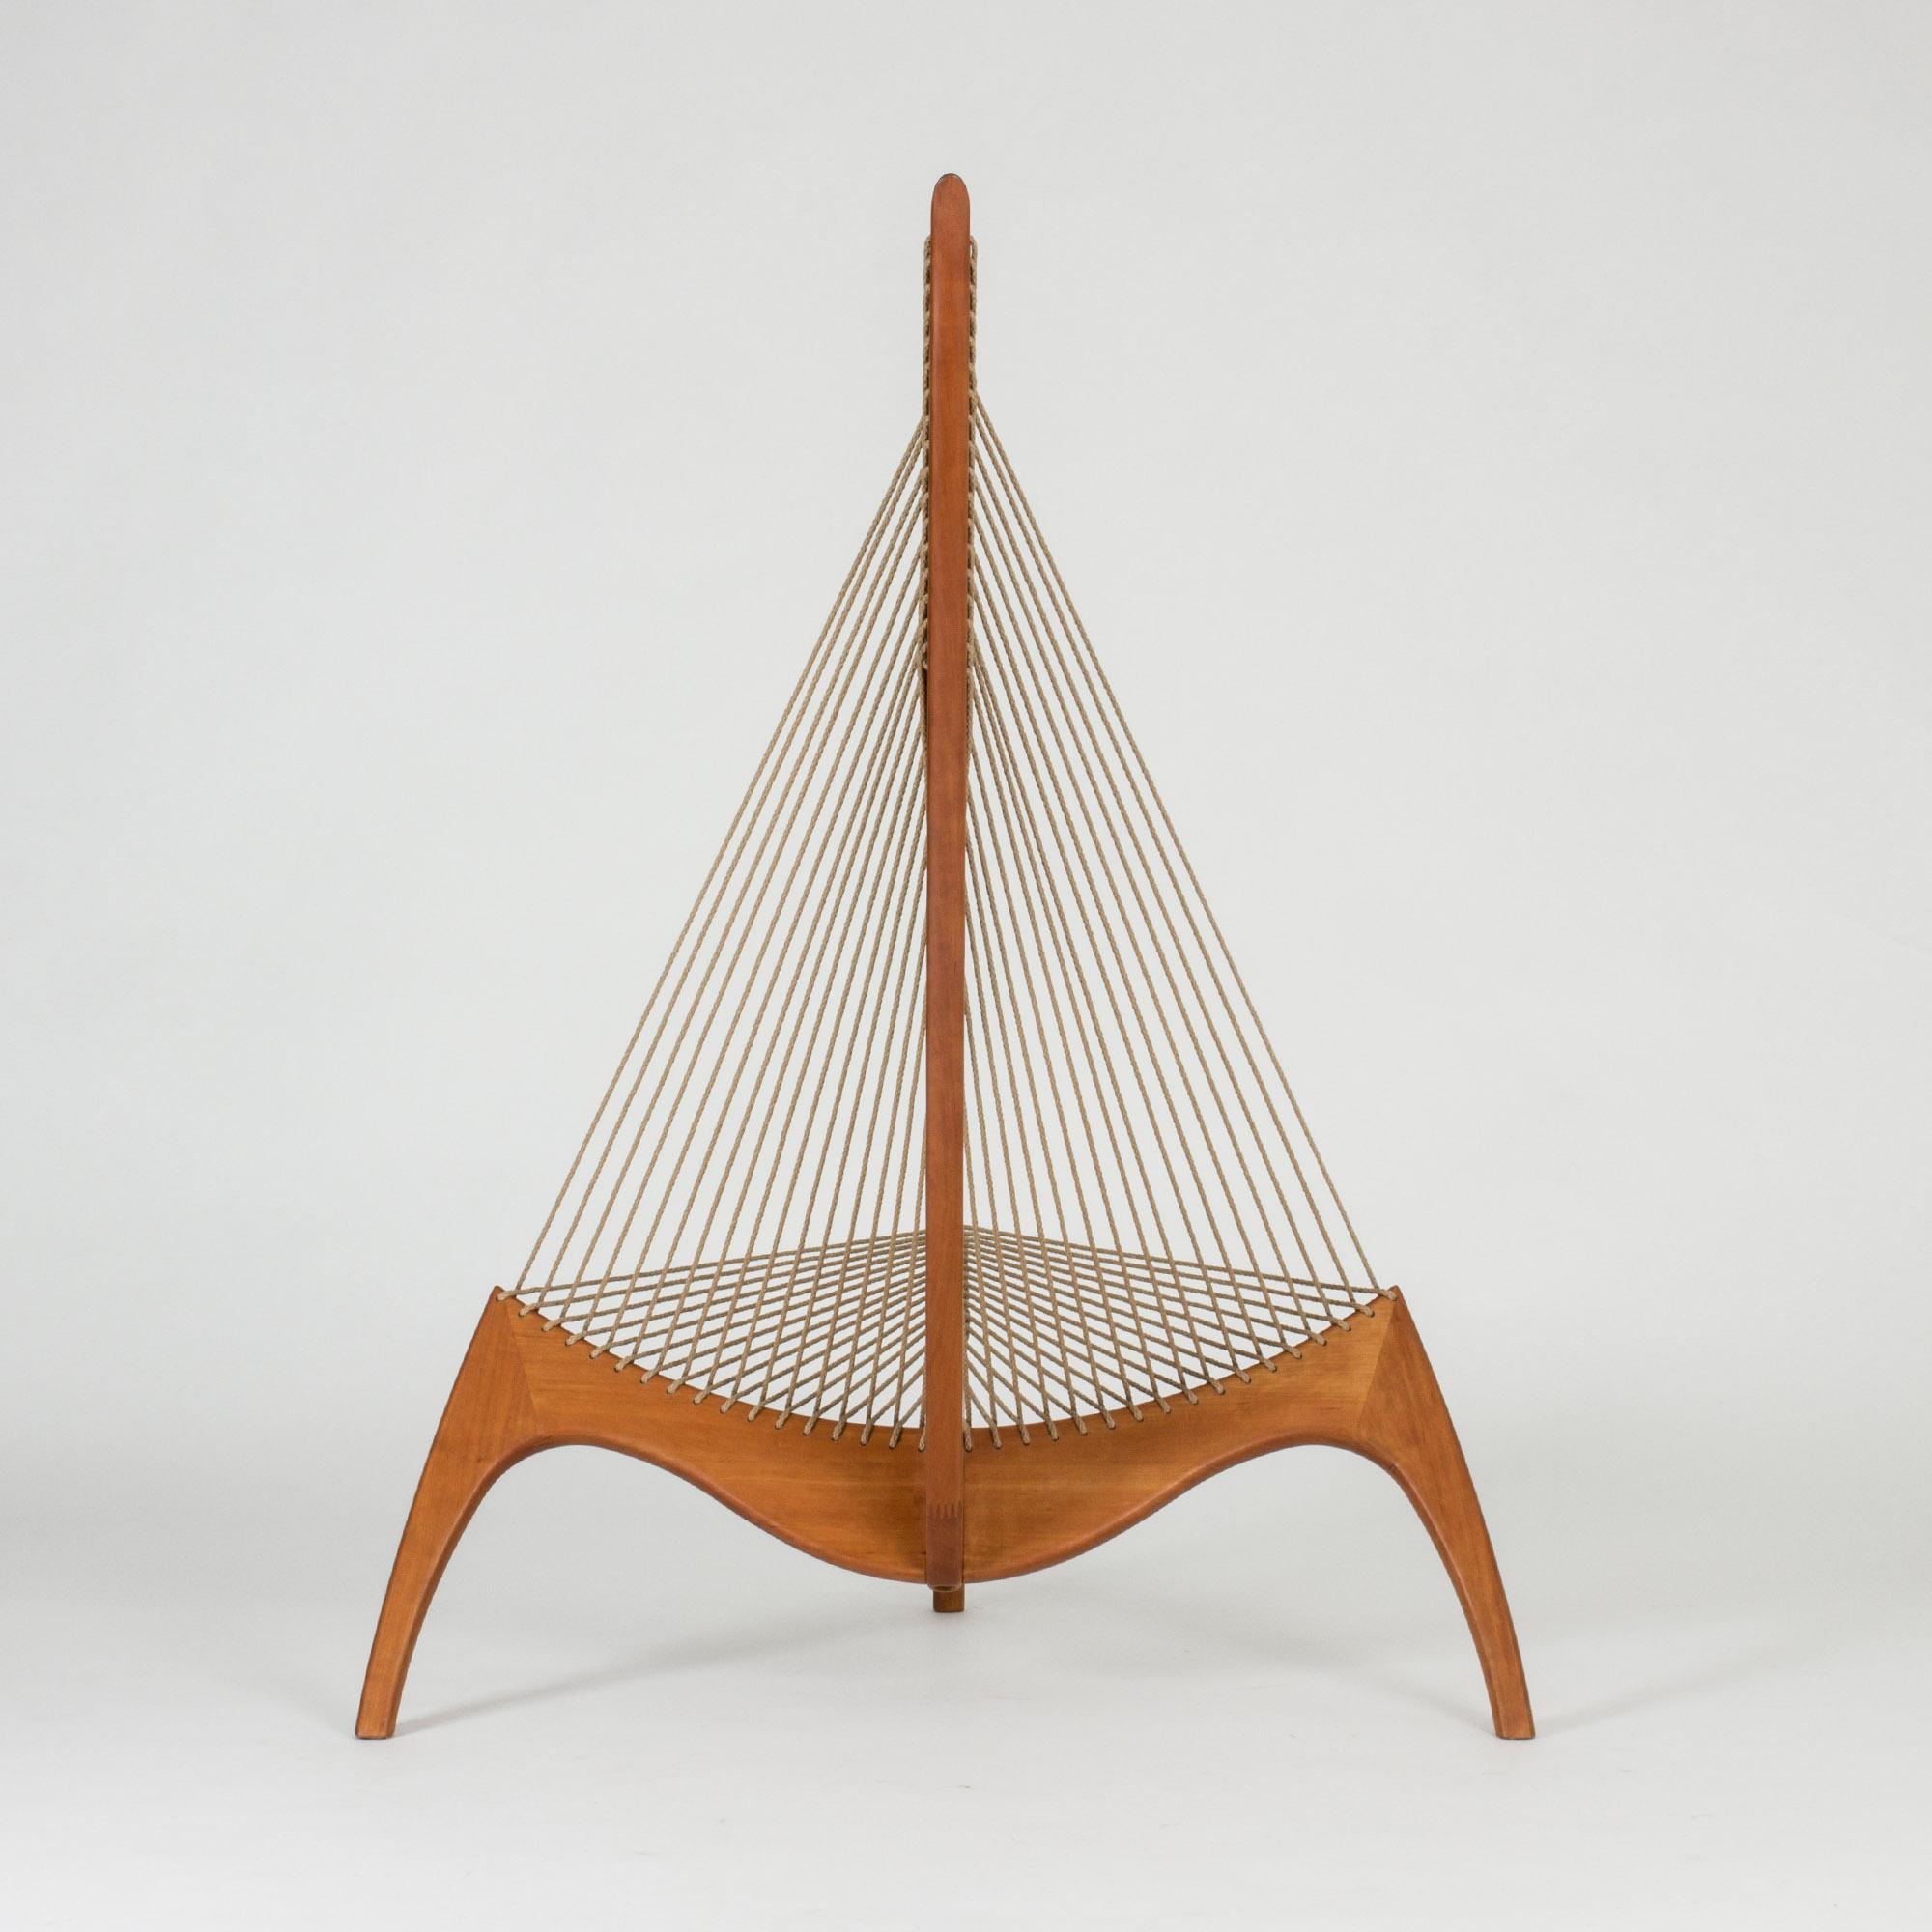 Danish “Harp Chair” by Jørgen Høvelskov